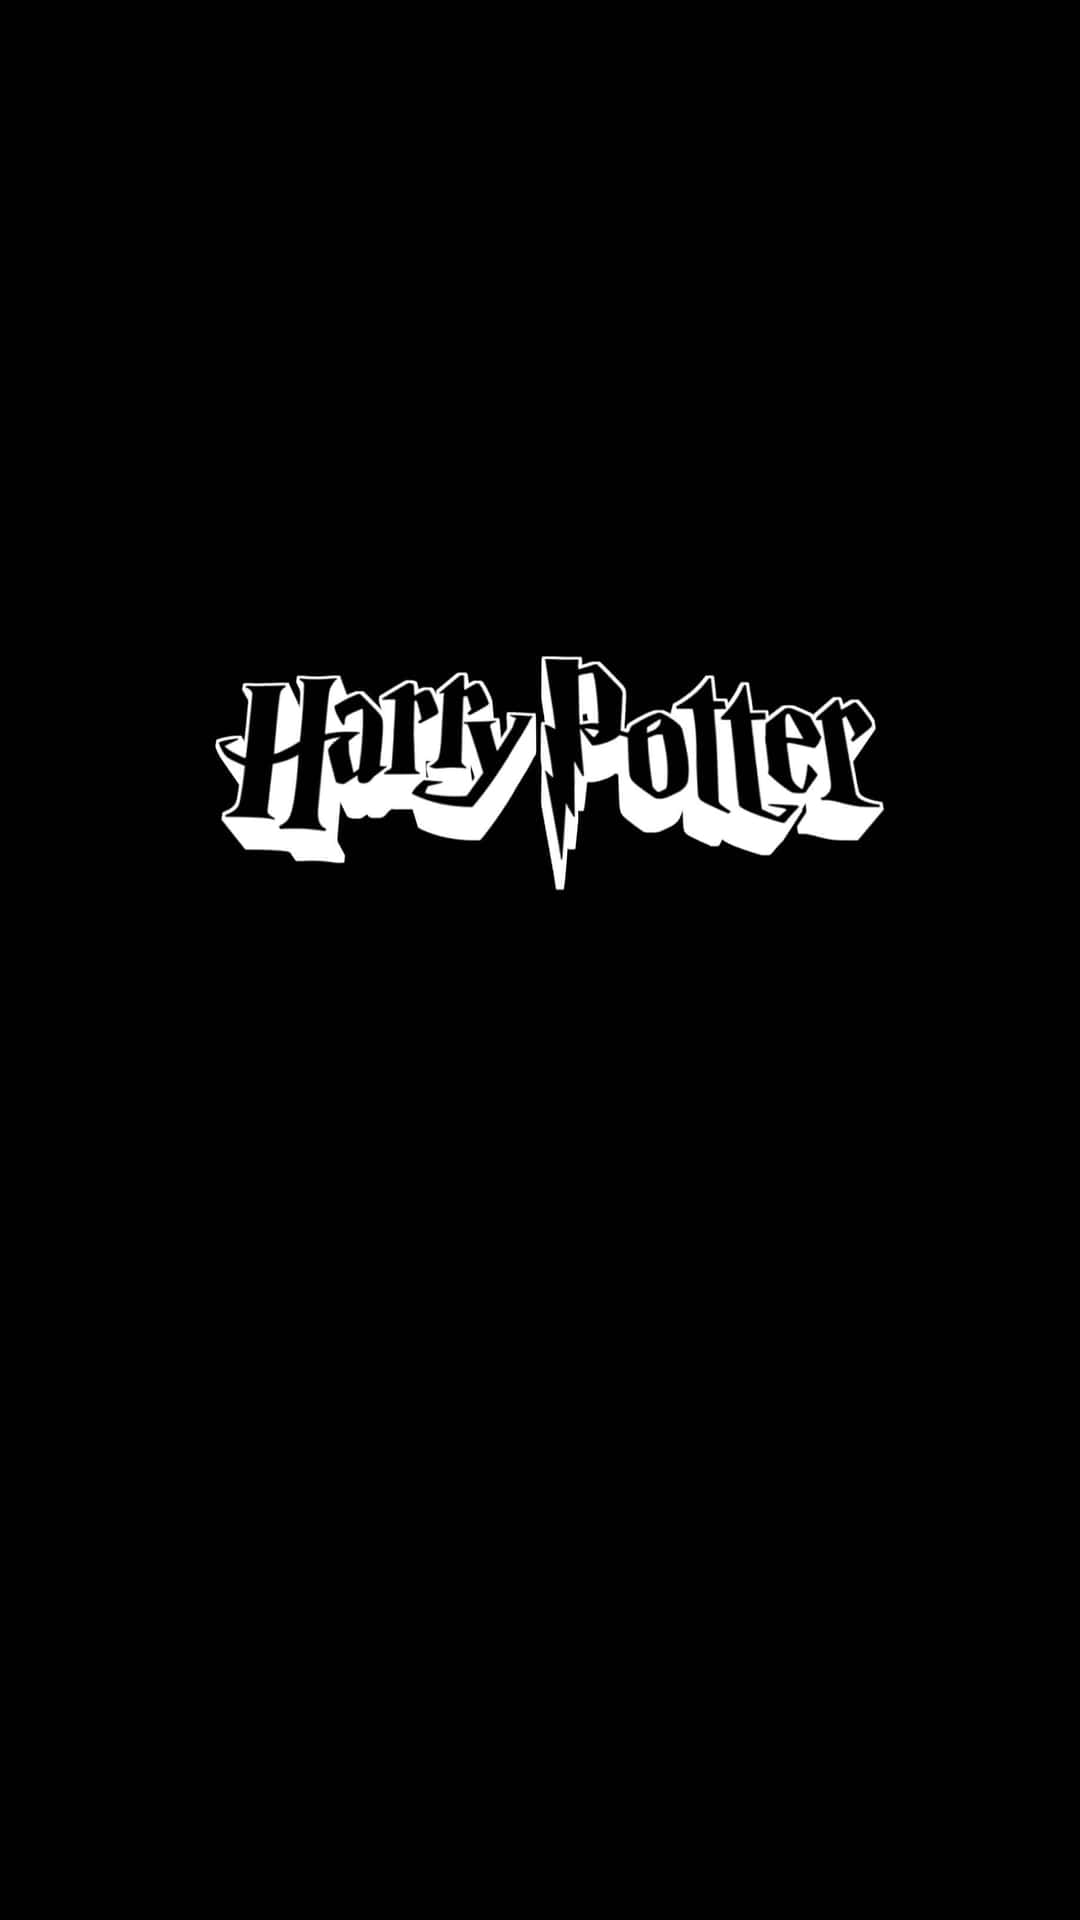 Unterder Magischen Welt Von Hogwarts Lauert An Jeder Ecke Gefahr. Wallpaper